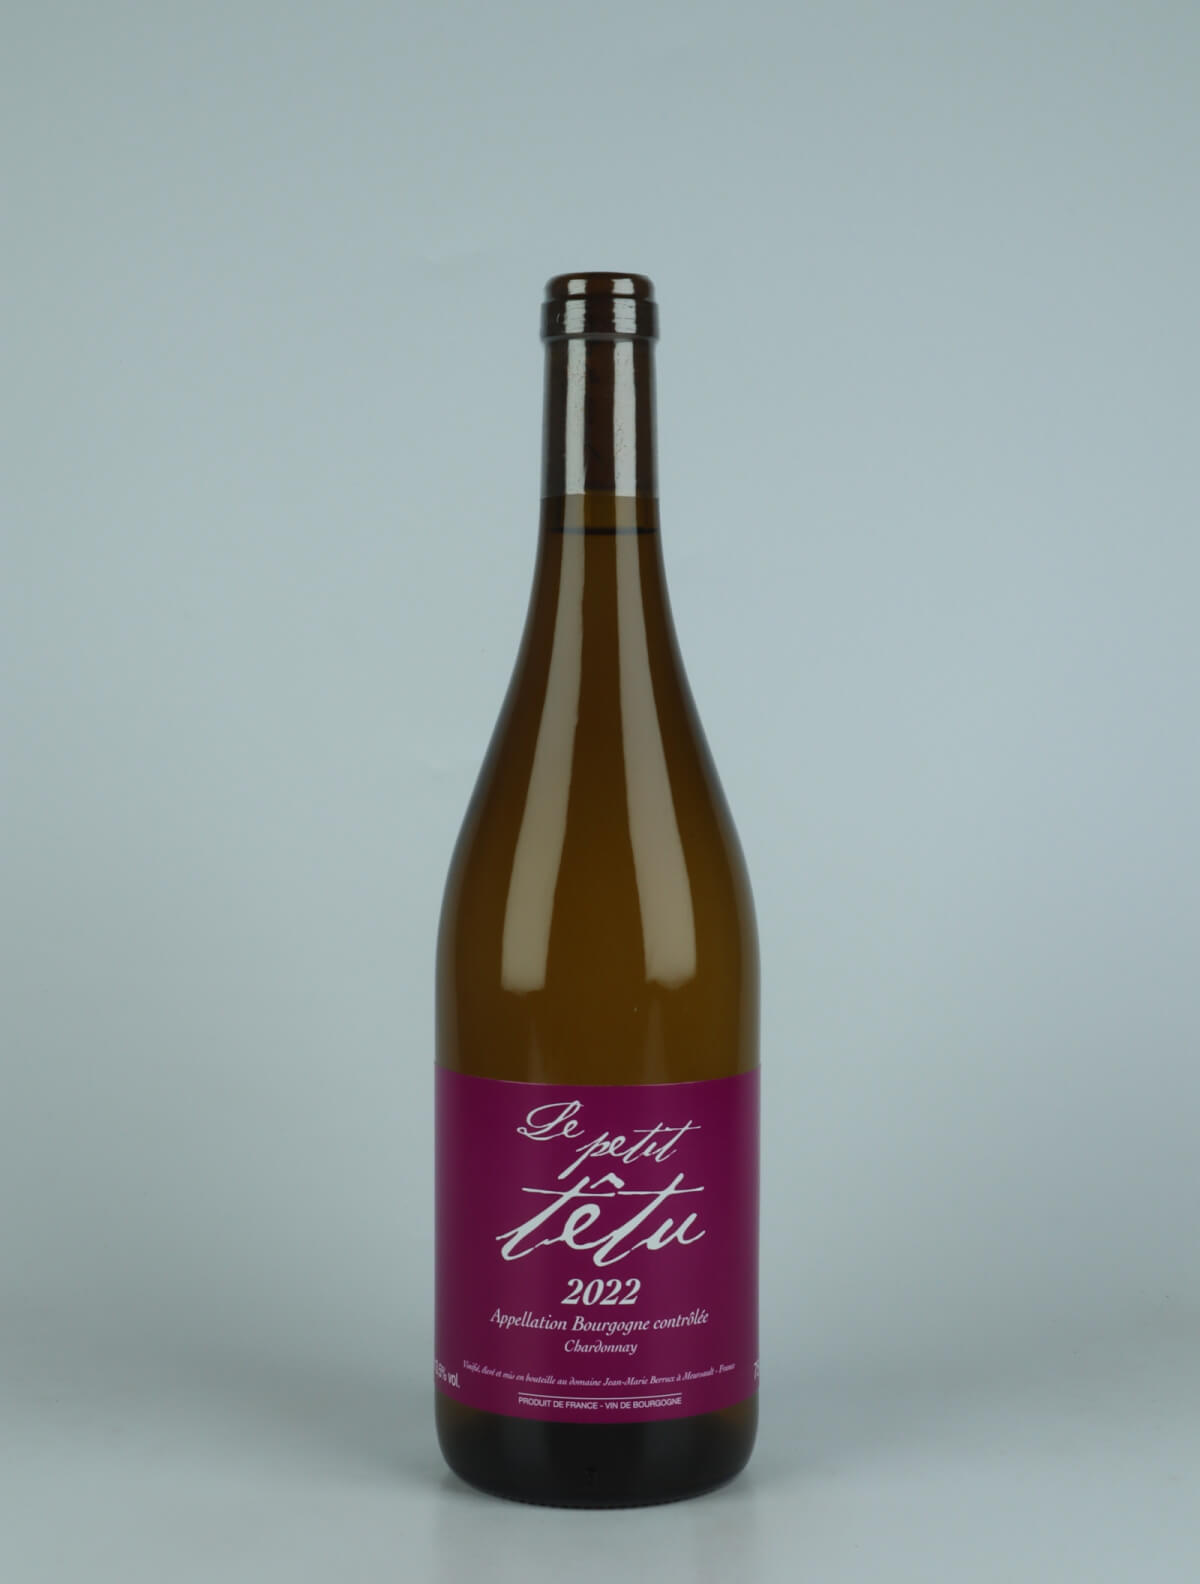 A bottle 2022 Le Petit Têtu White wine from Jean-Marie Berrux, Burgundy in France